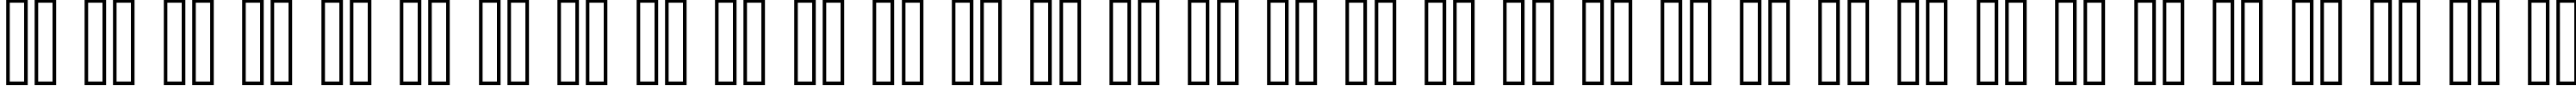 Пример написания русского алфавита шрифтом header 08_65